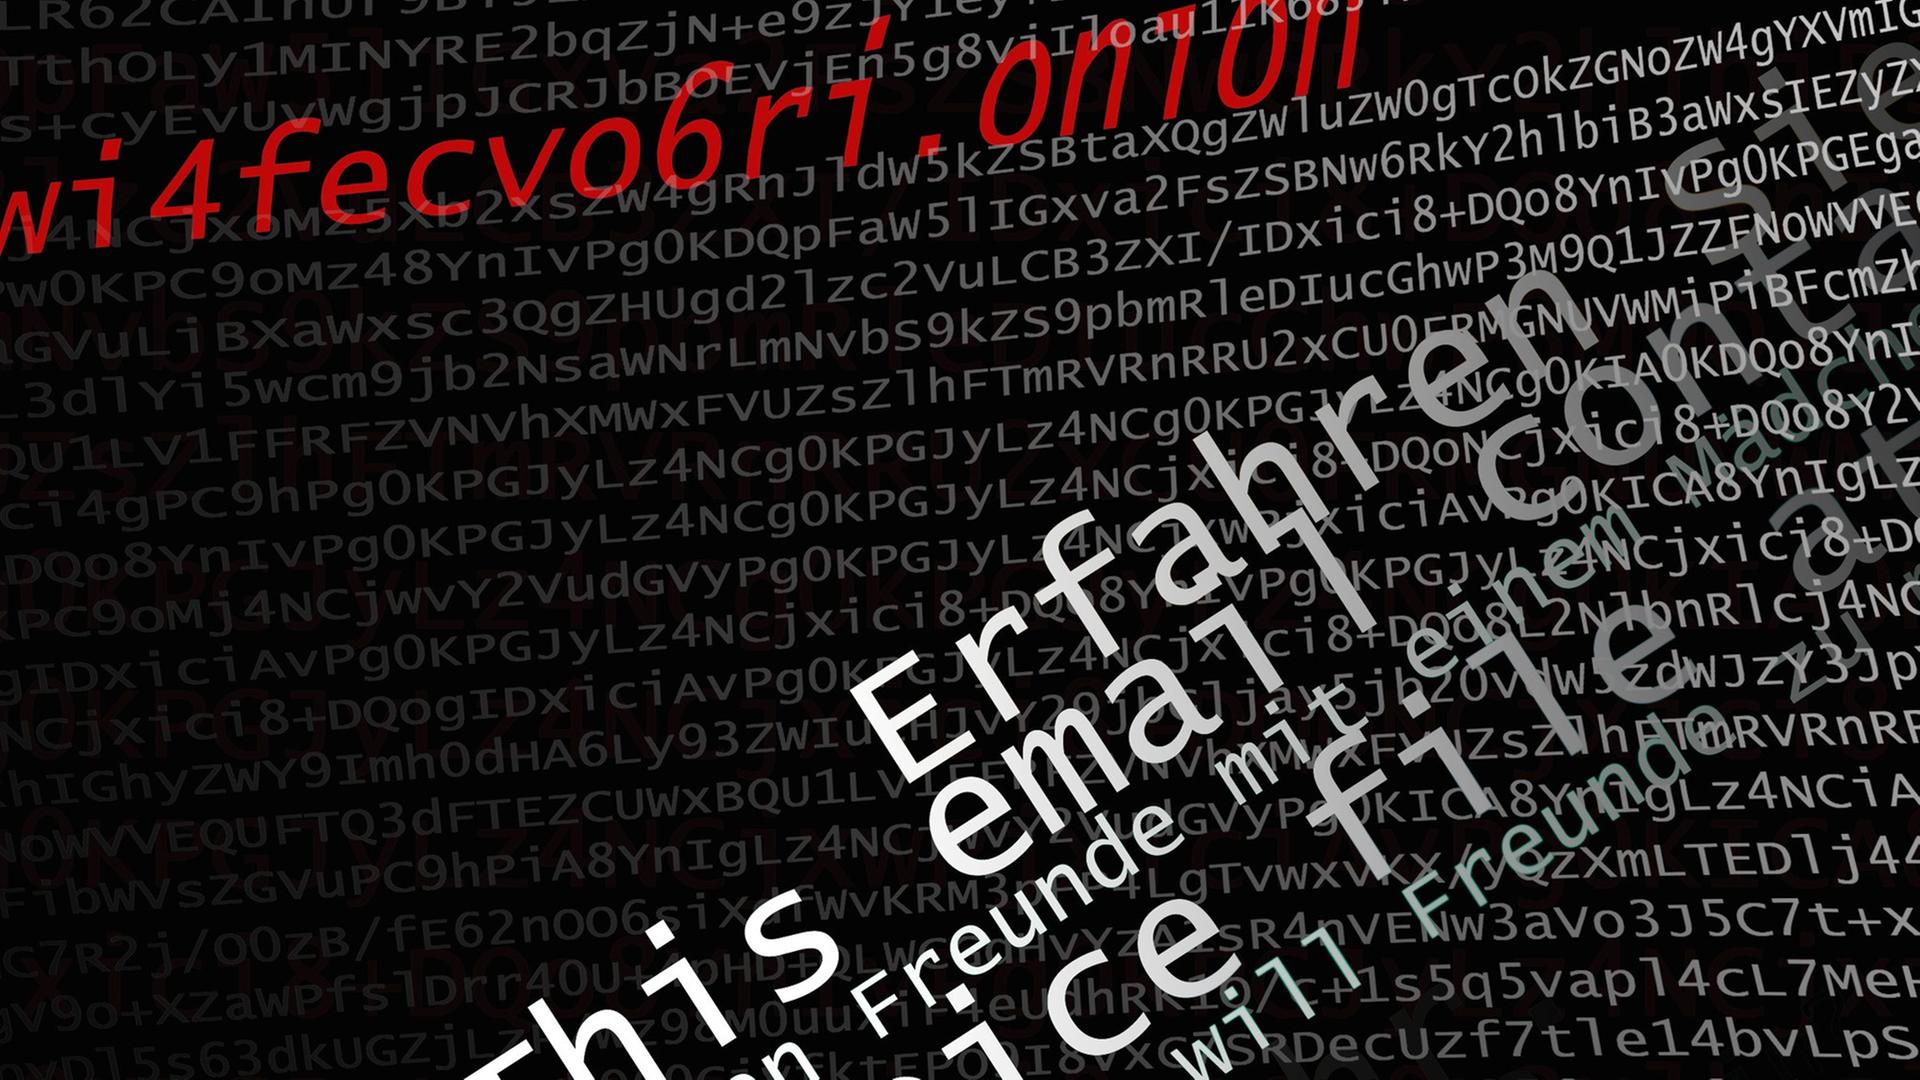 Die Illustration spielt mit Verschlüsselung, Adressen des Tor-Netzwerks ("Darknet") und Spam-Mails. Der Hintergrund ist der Quellcode einer Email.